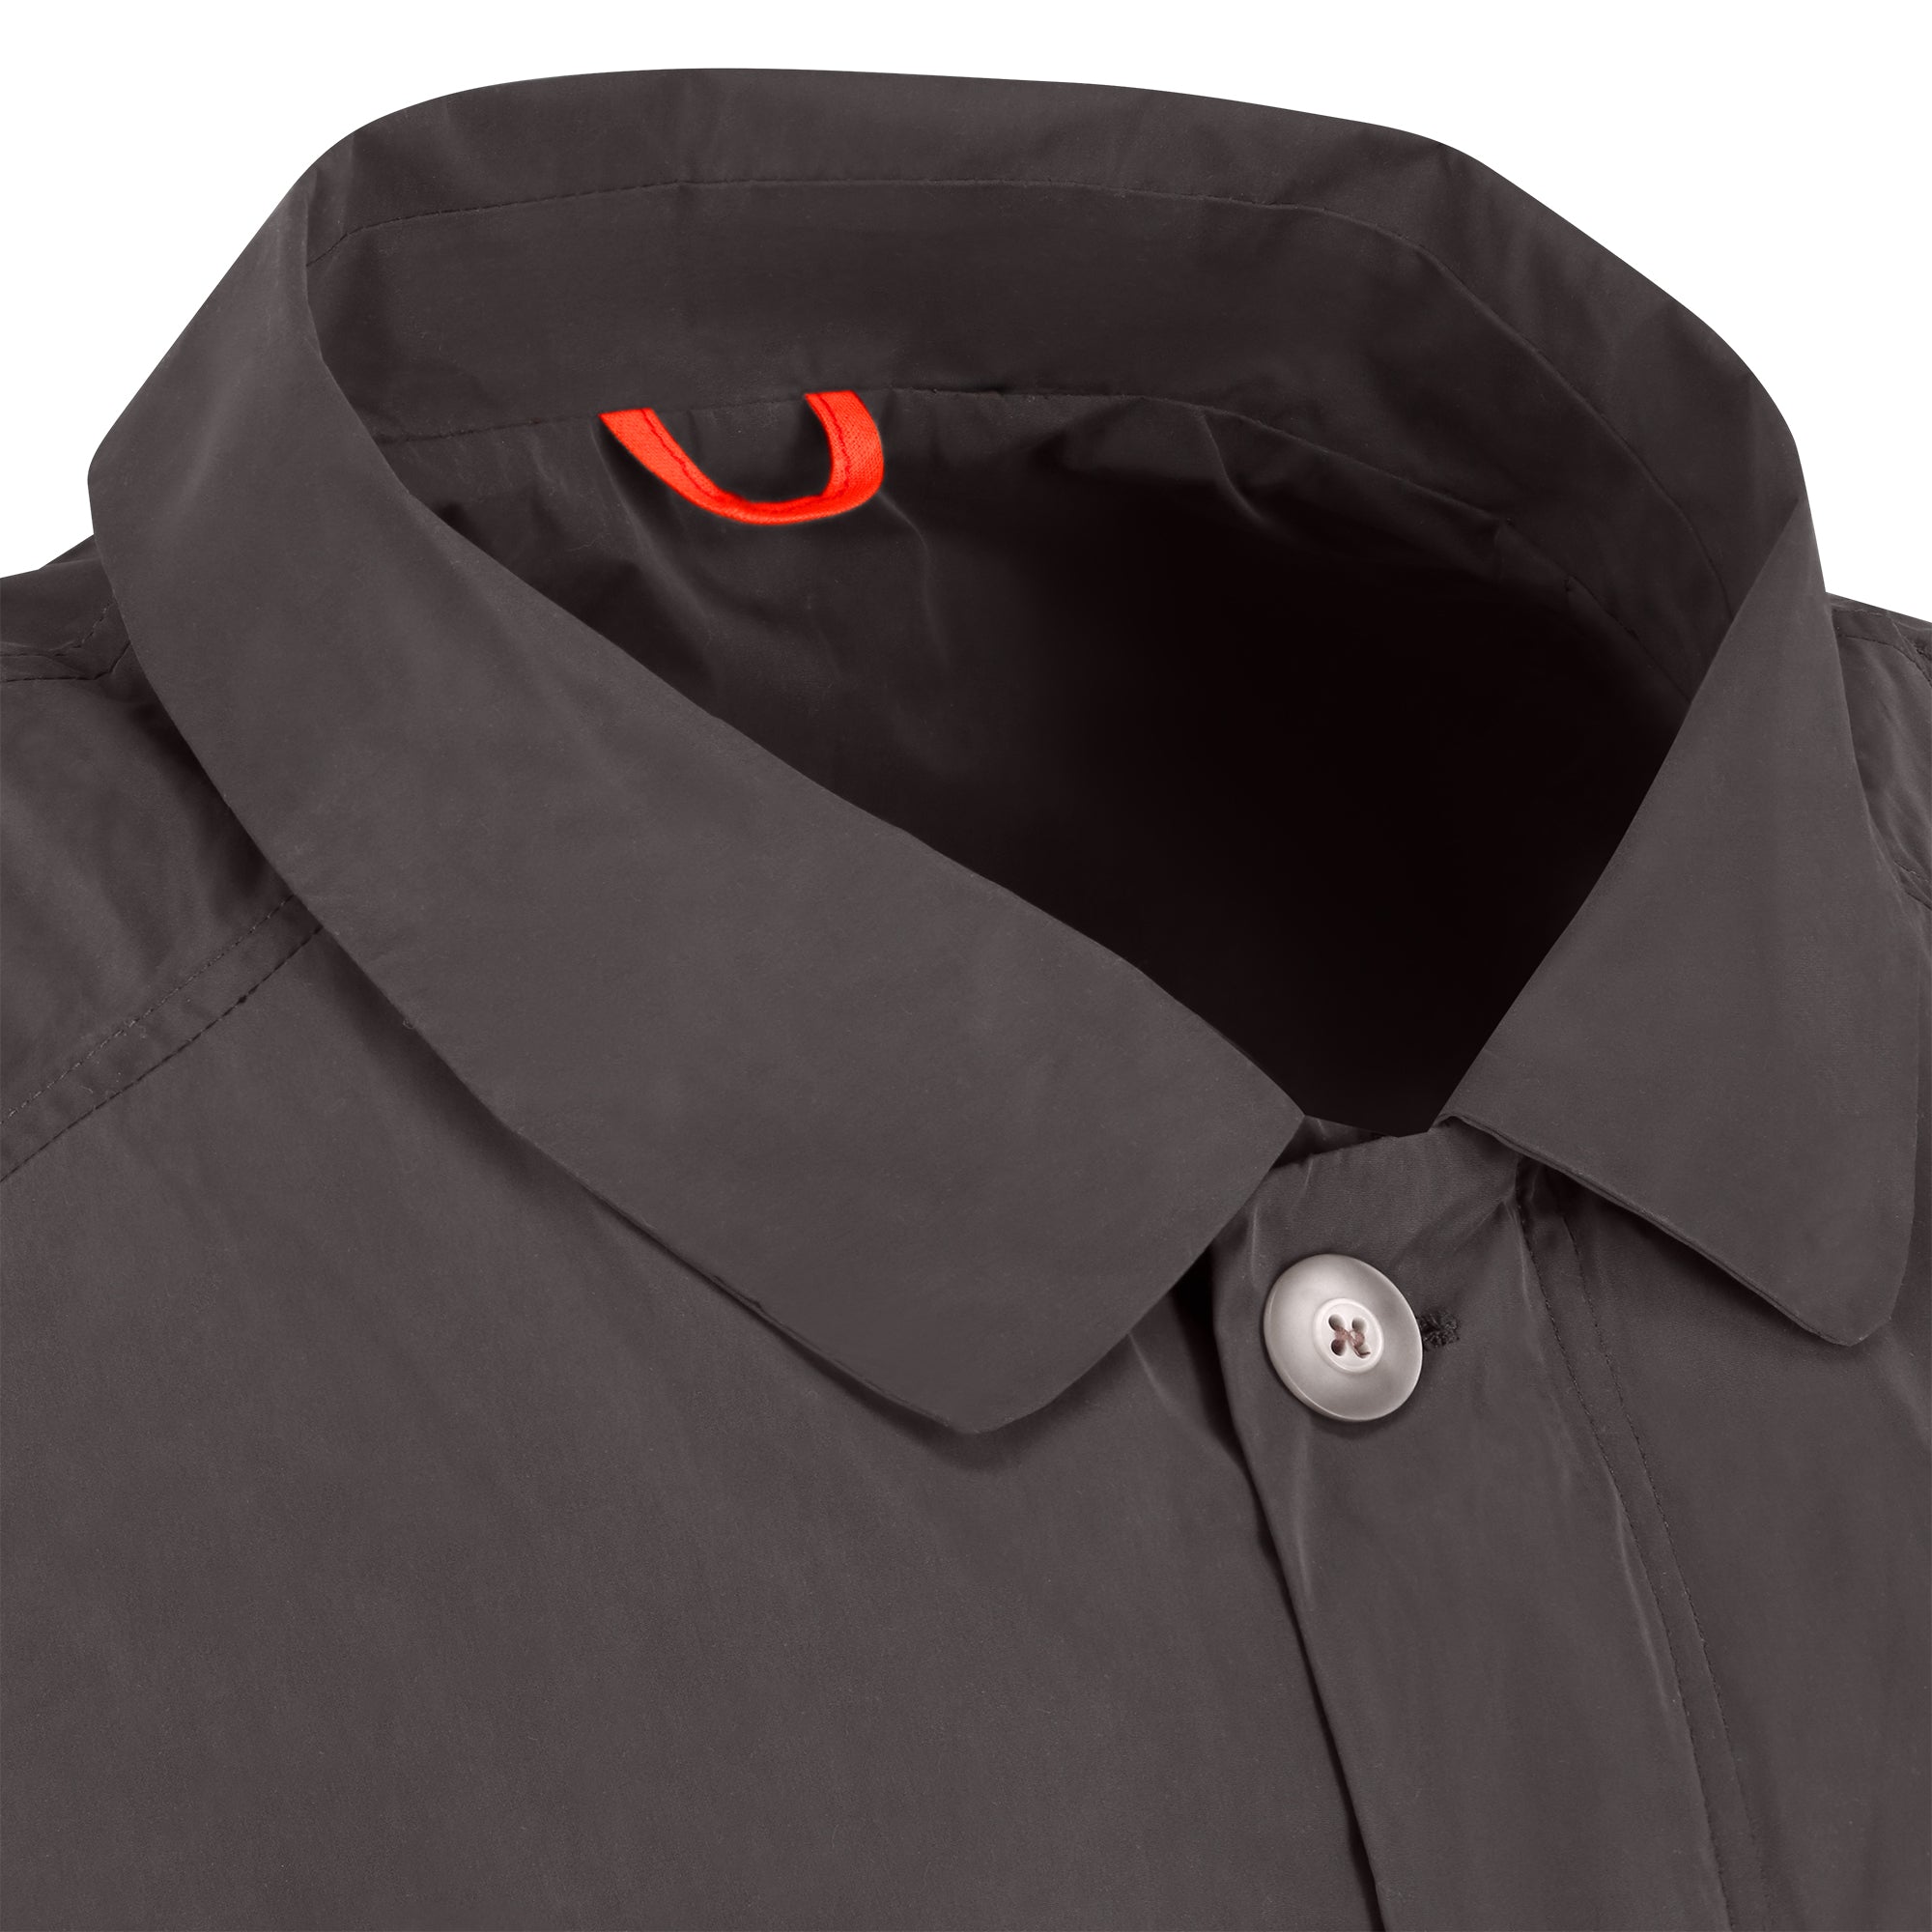 Strato men's raincoat - dark grey color - neckline detail